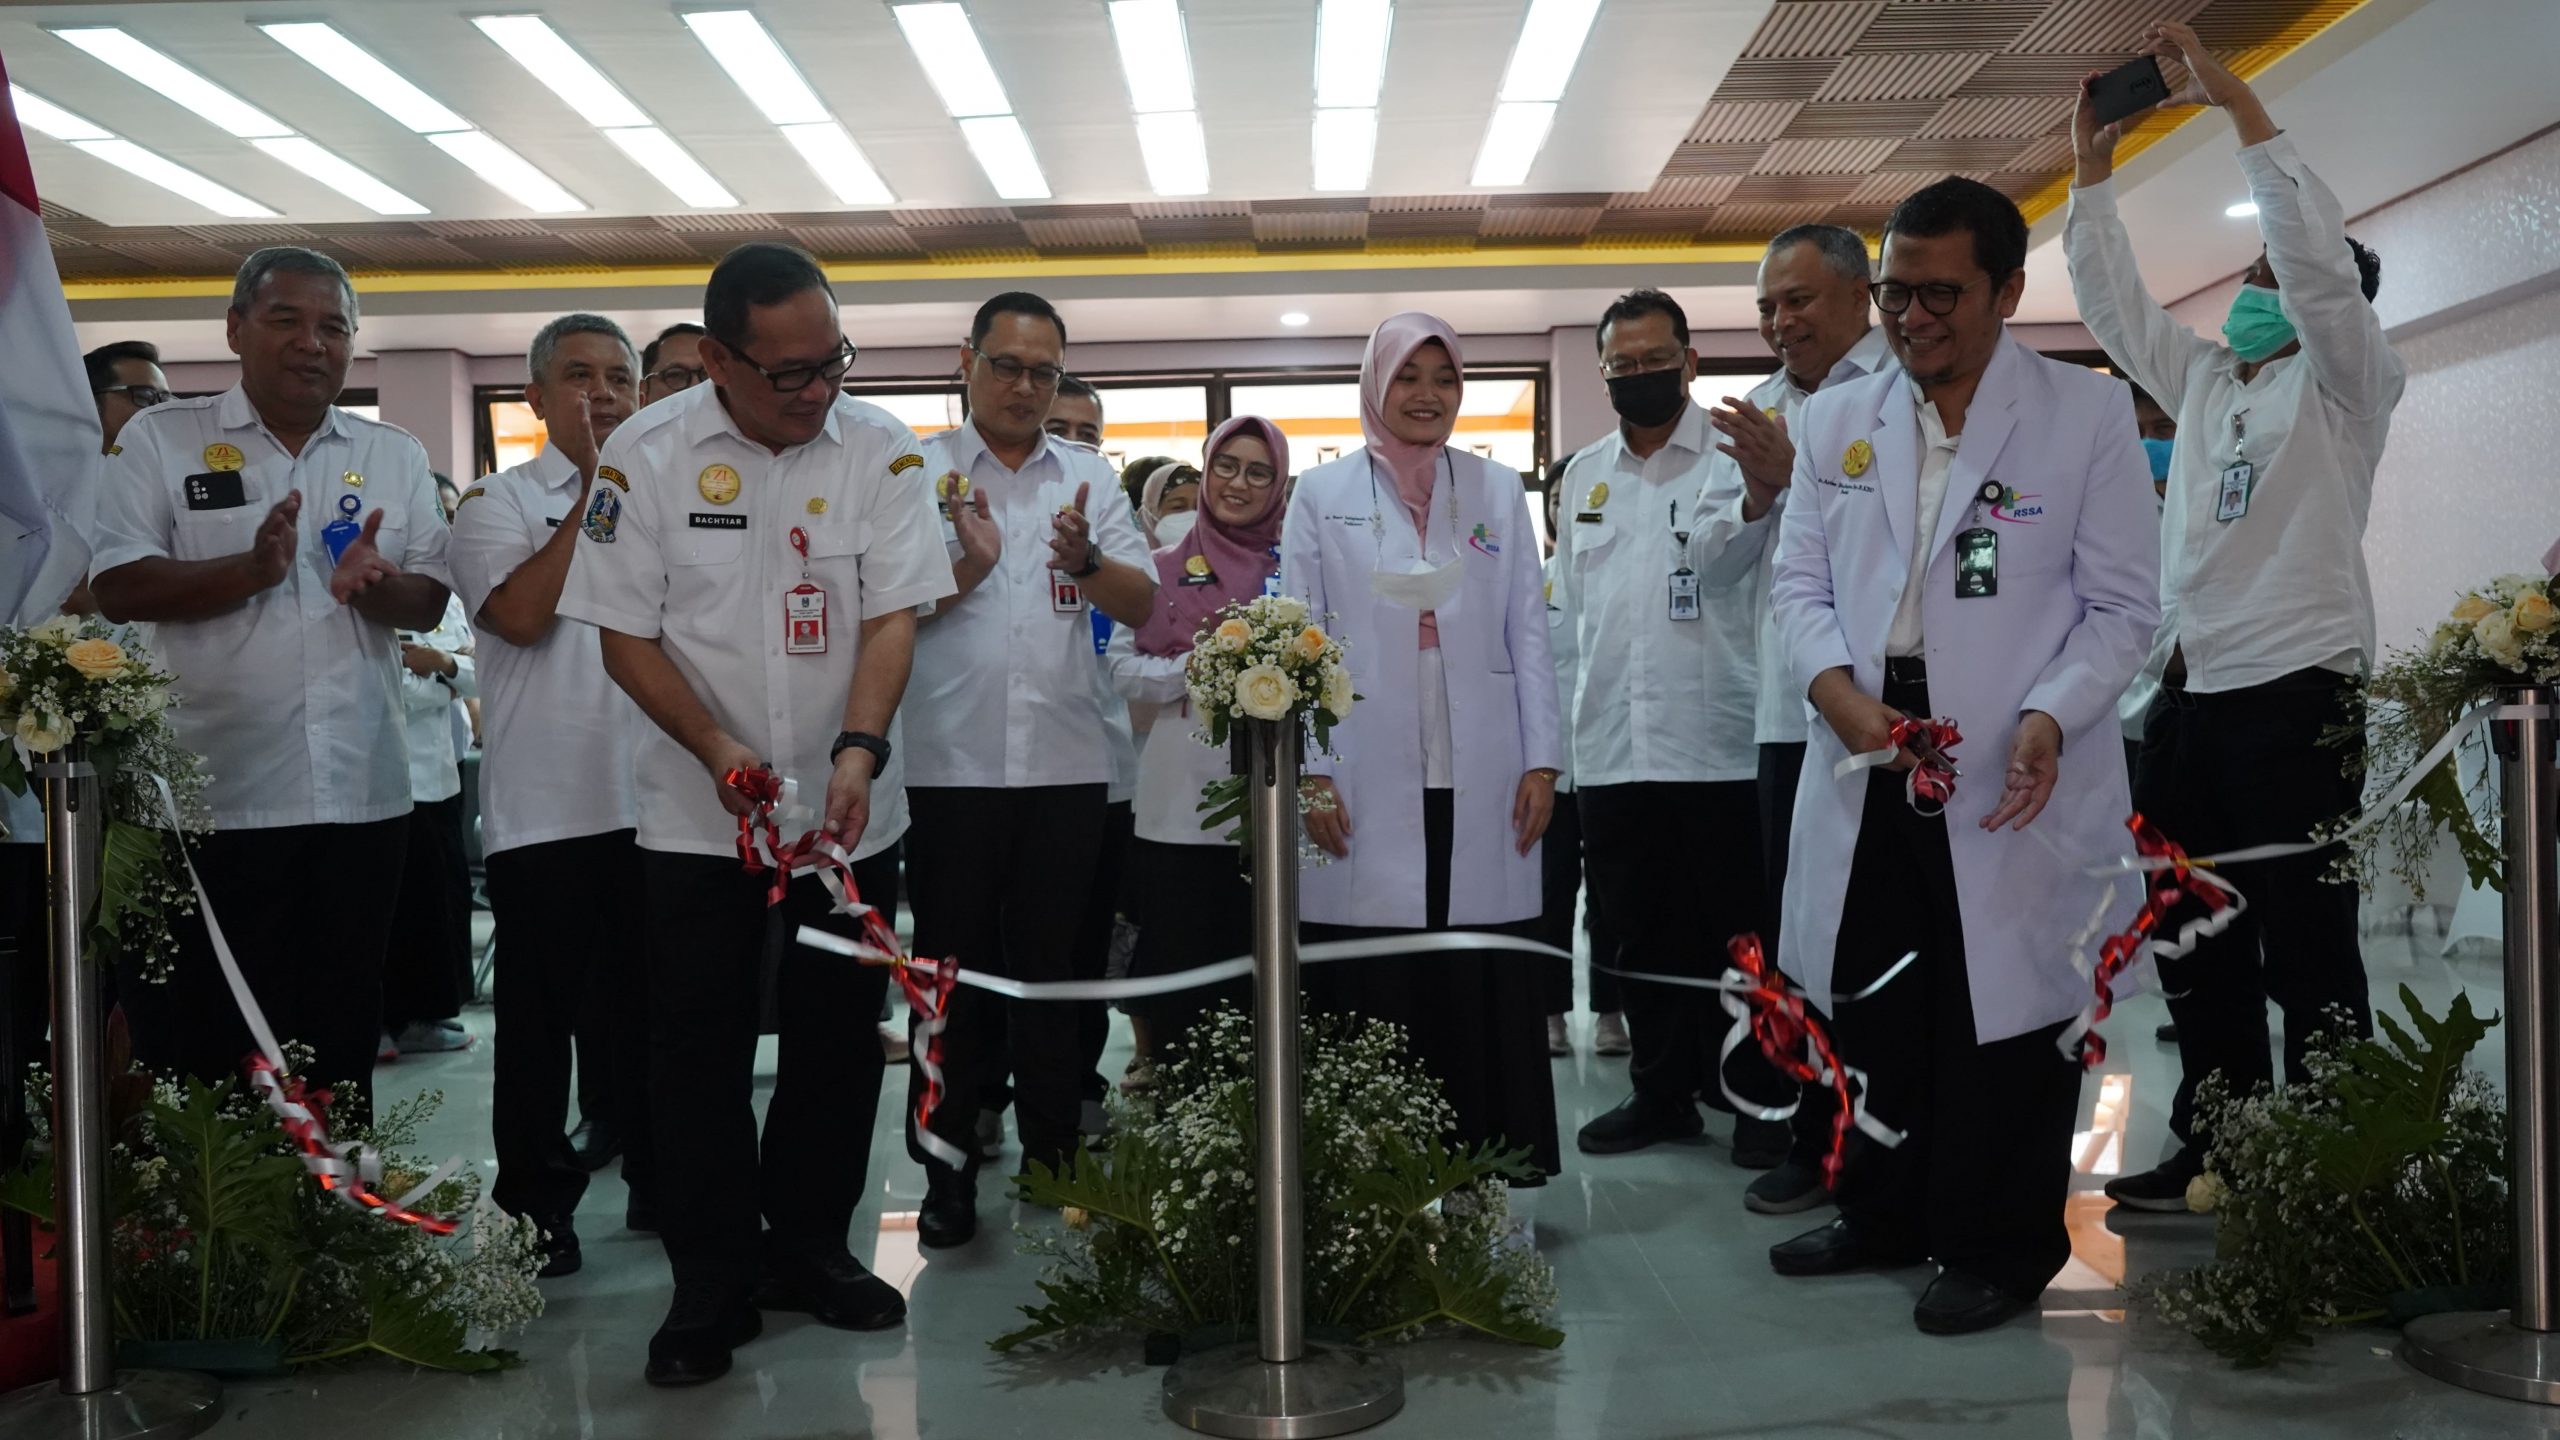 Pembukaan Klinik Spesialis Lantai 3 Gedung Rawat Jalan RSUD Dr. Saiful Anwar